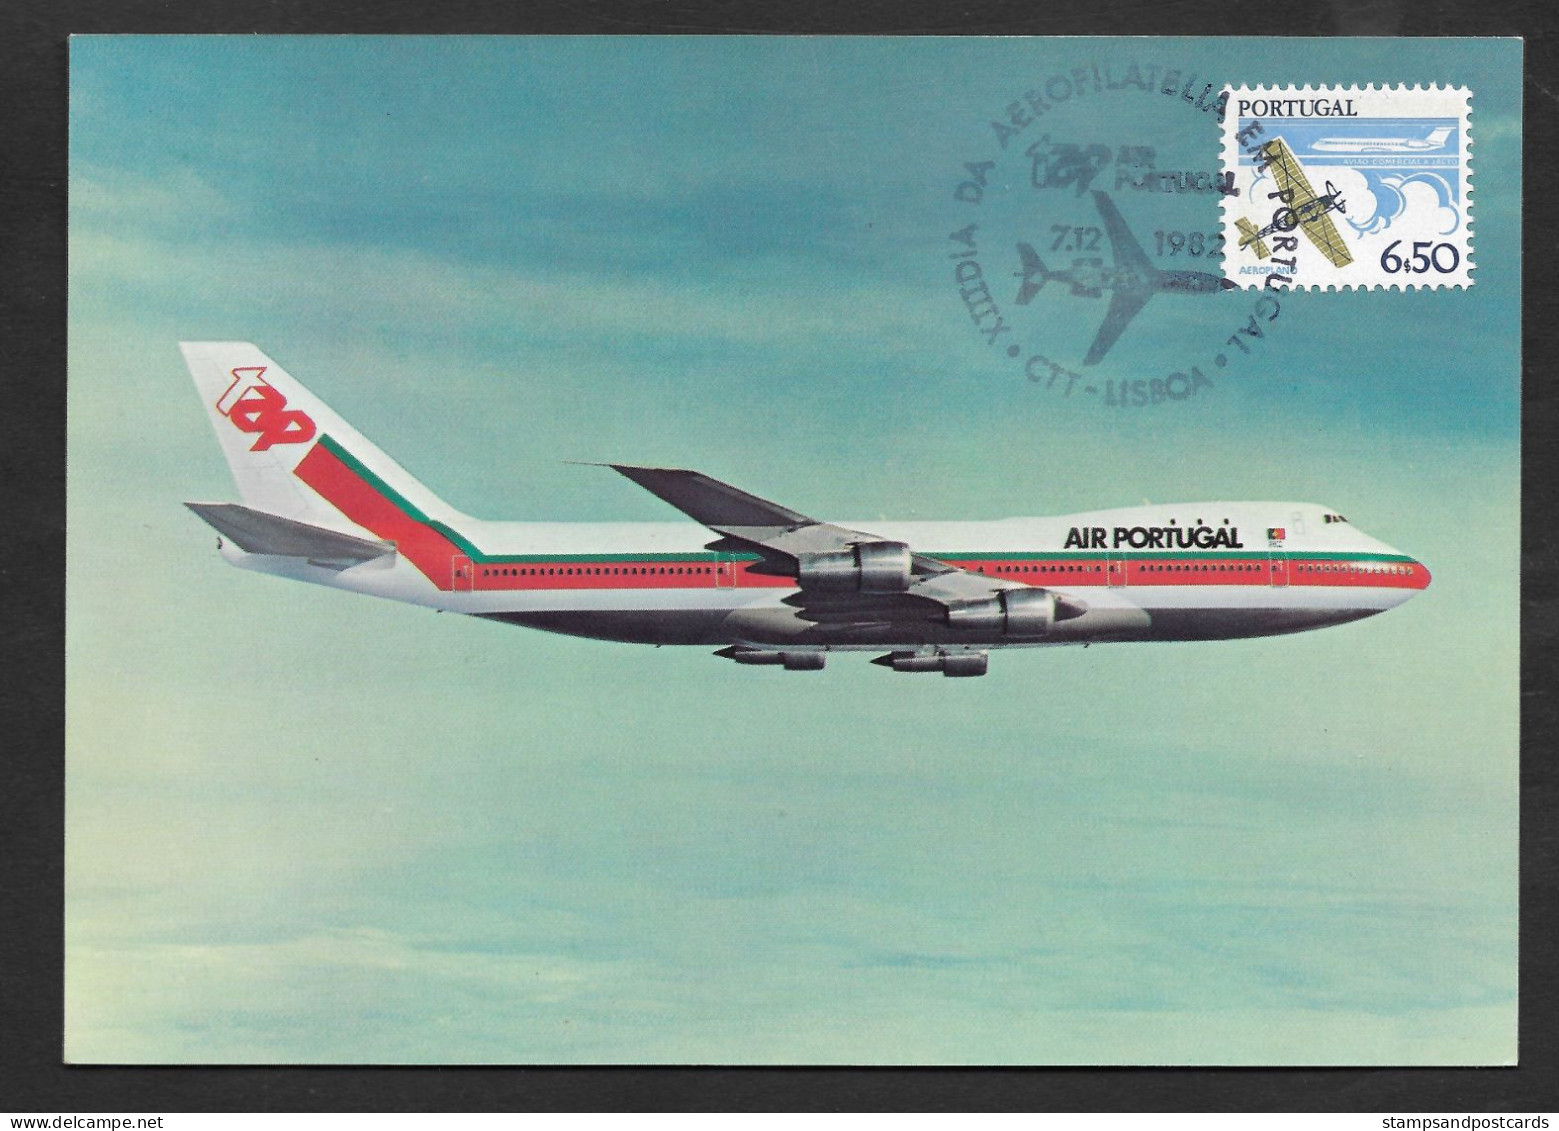 Portugal Avion TAP Air Portugal Carte Postale Maximum 1982 Airplane Airline QSL Postcard Maxicard - Avions